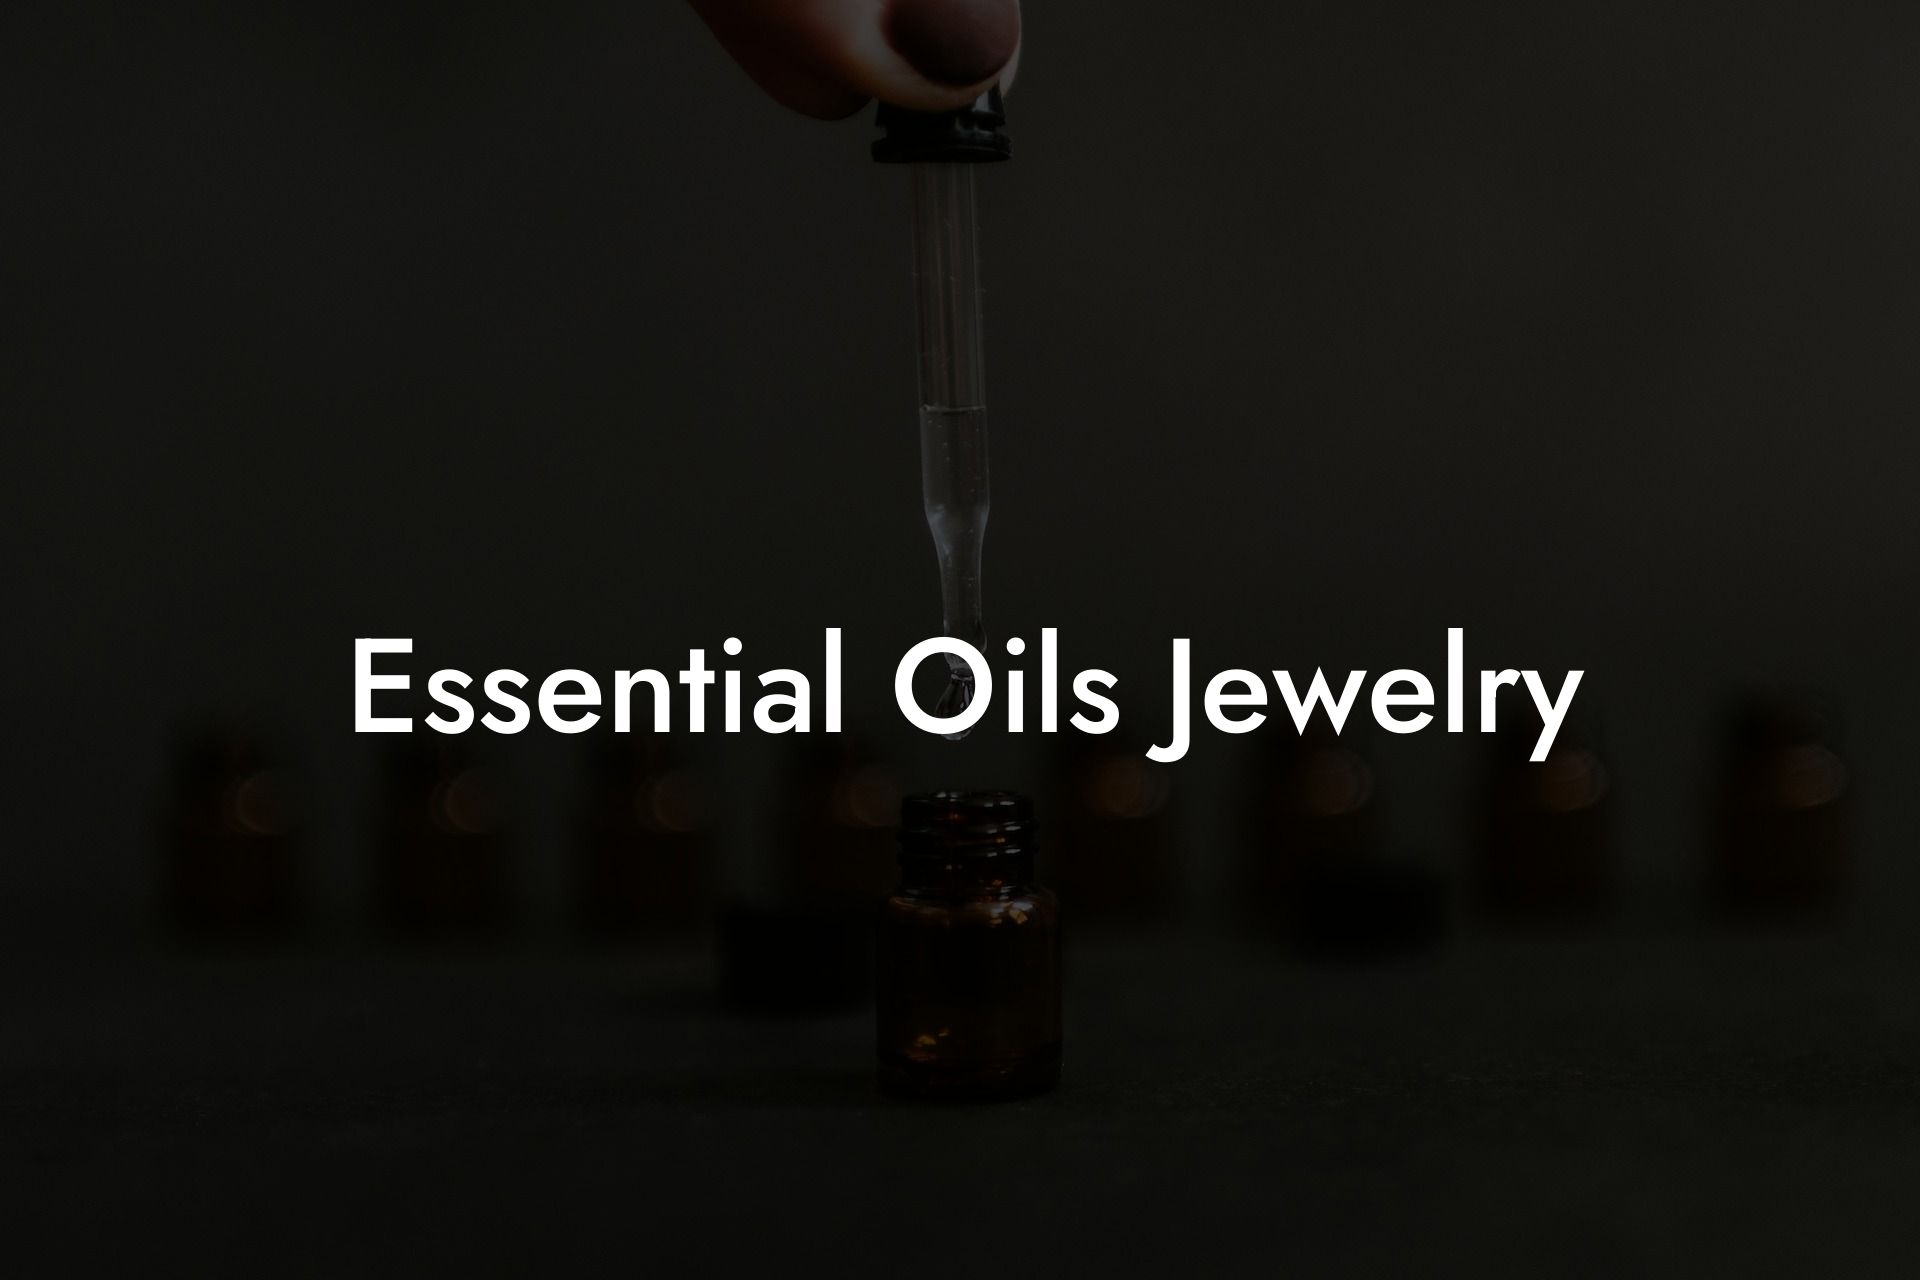 Essential Oils Jewelry